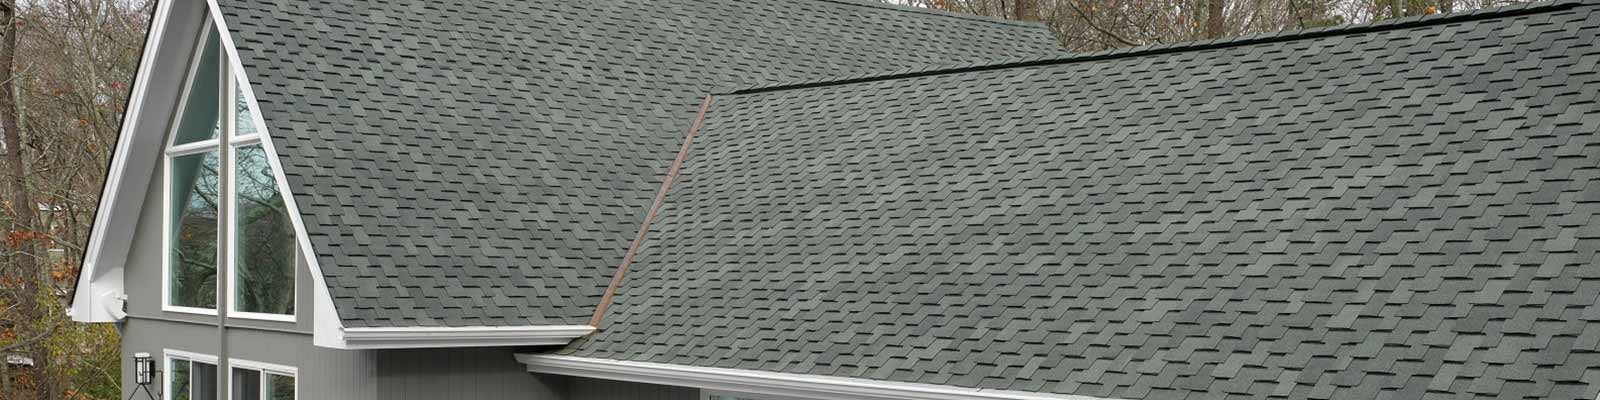 roof slate installation minneapolis